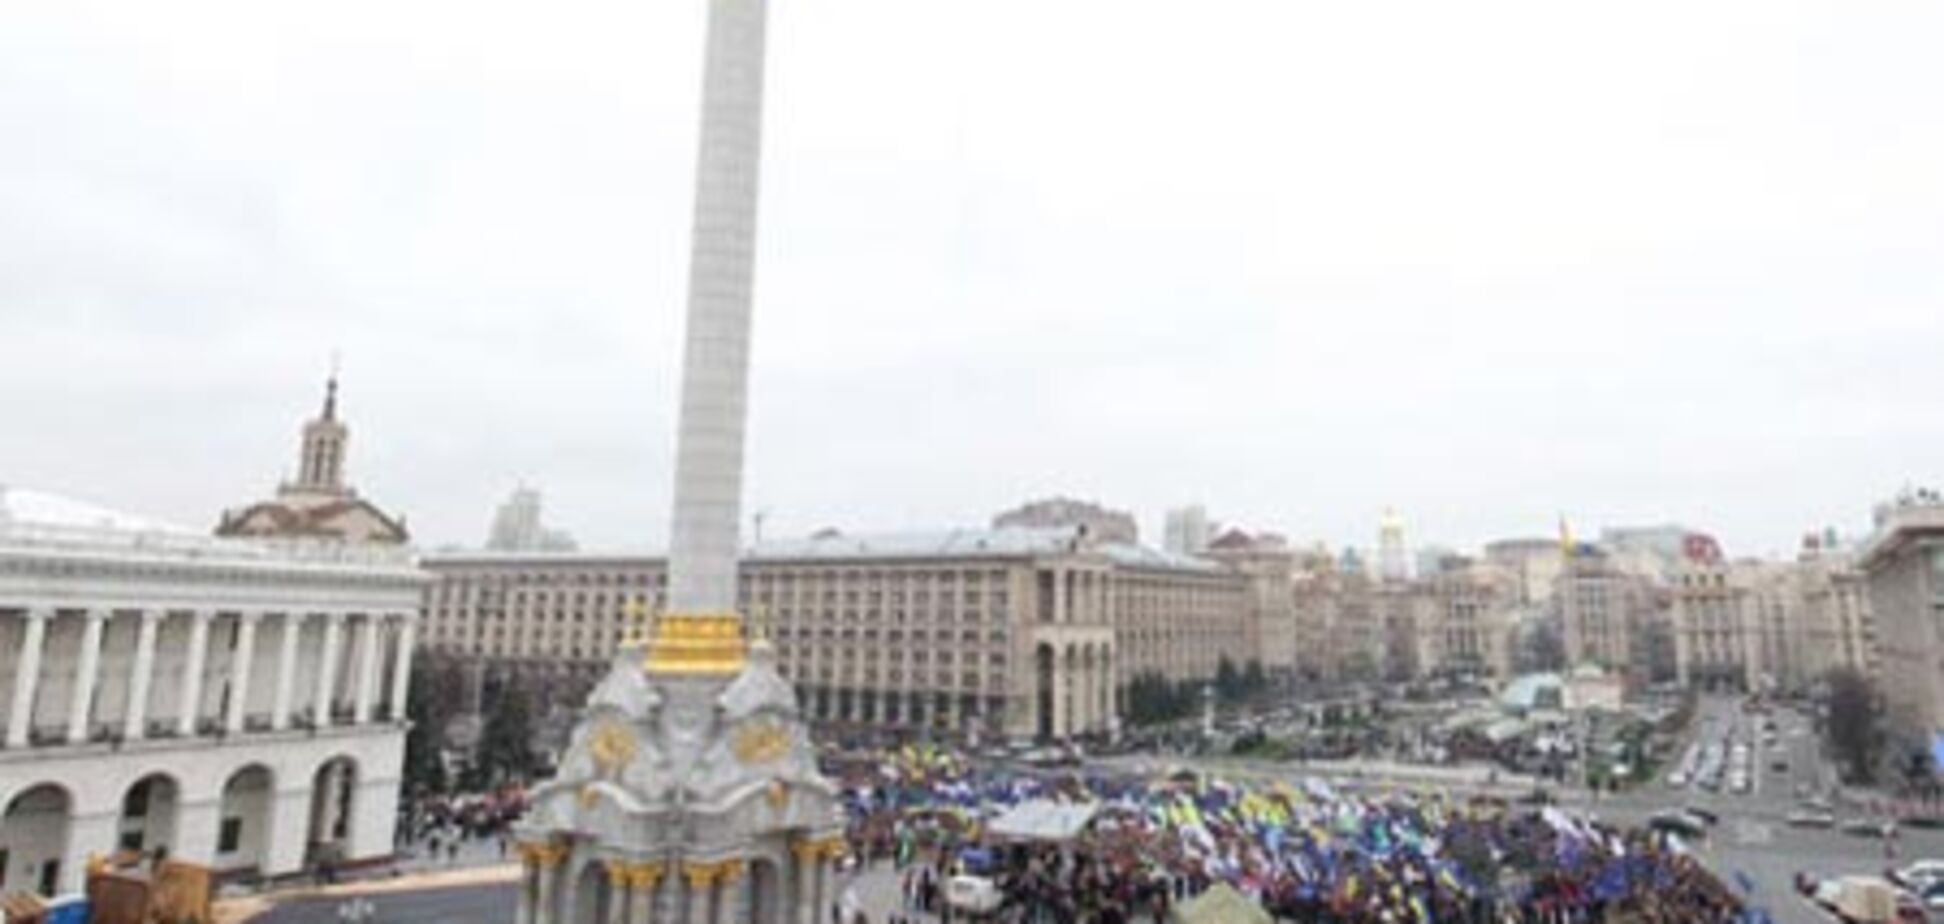 МВС: наметове містечко на Майдані буде демонтований